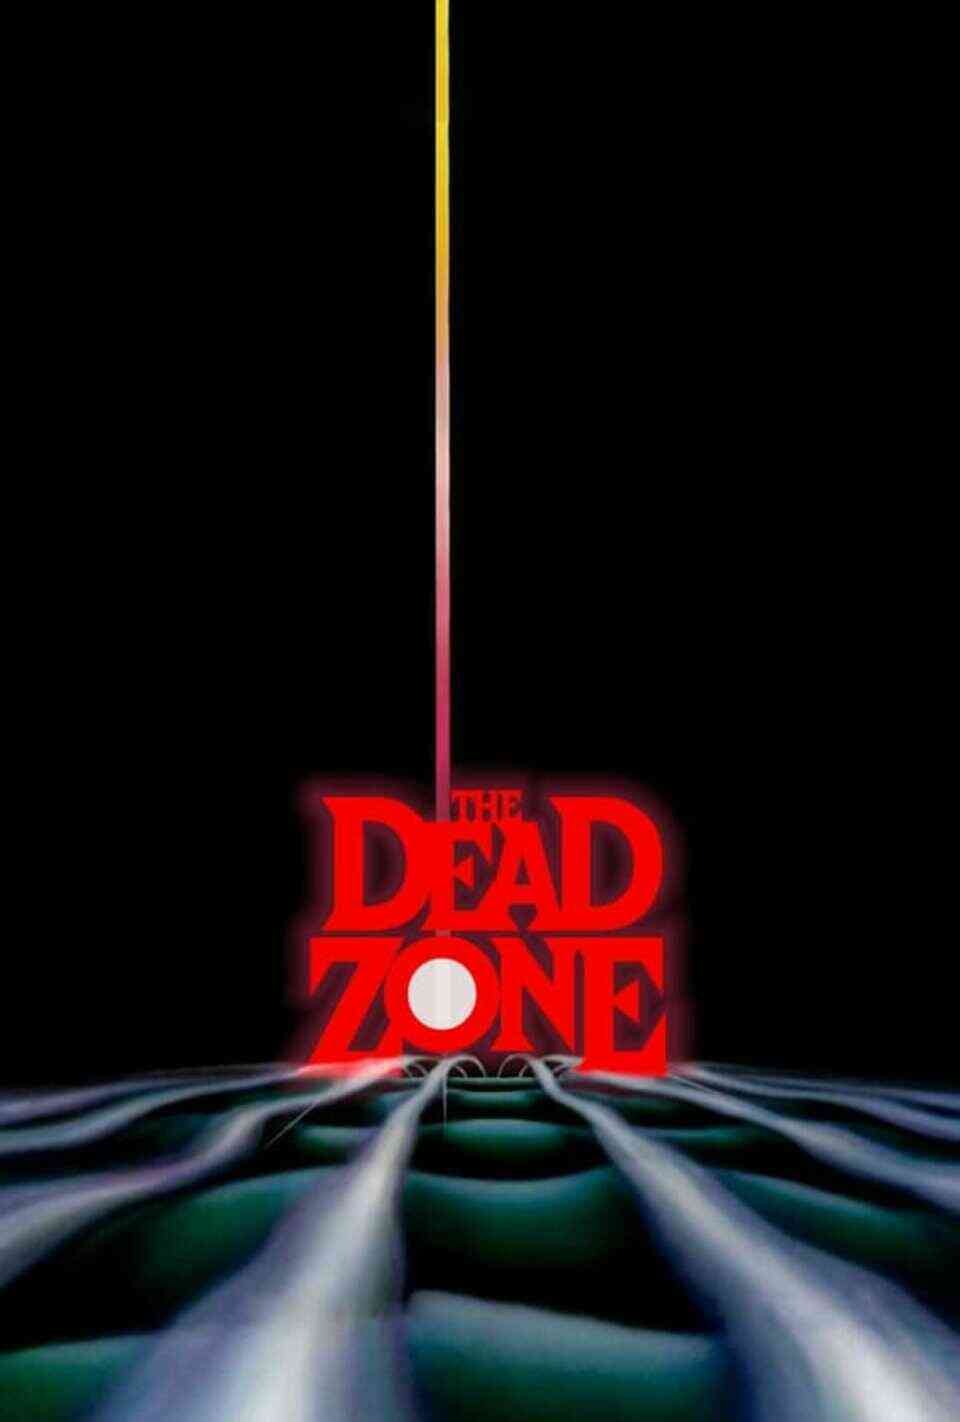 Read The Dead Zone screenplay.